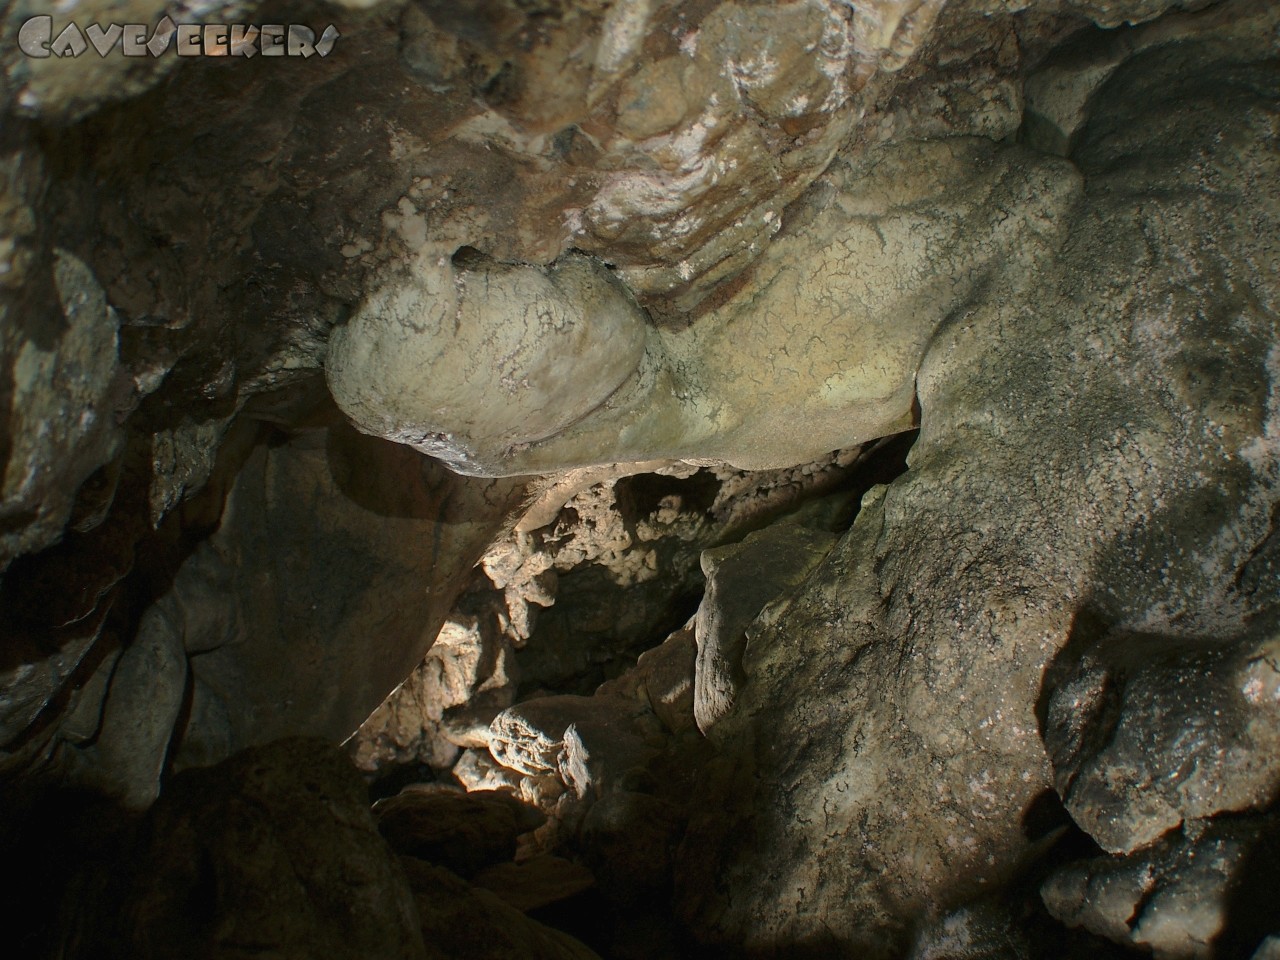 Bärenhöhle: Unfotografierbare Sinterwurst an der Schlufdecke. Höchst selten. Quasi nur hier zu bestaunen.